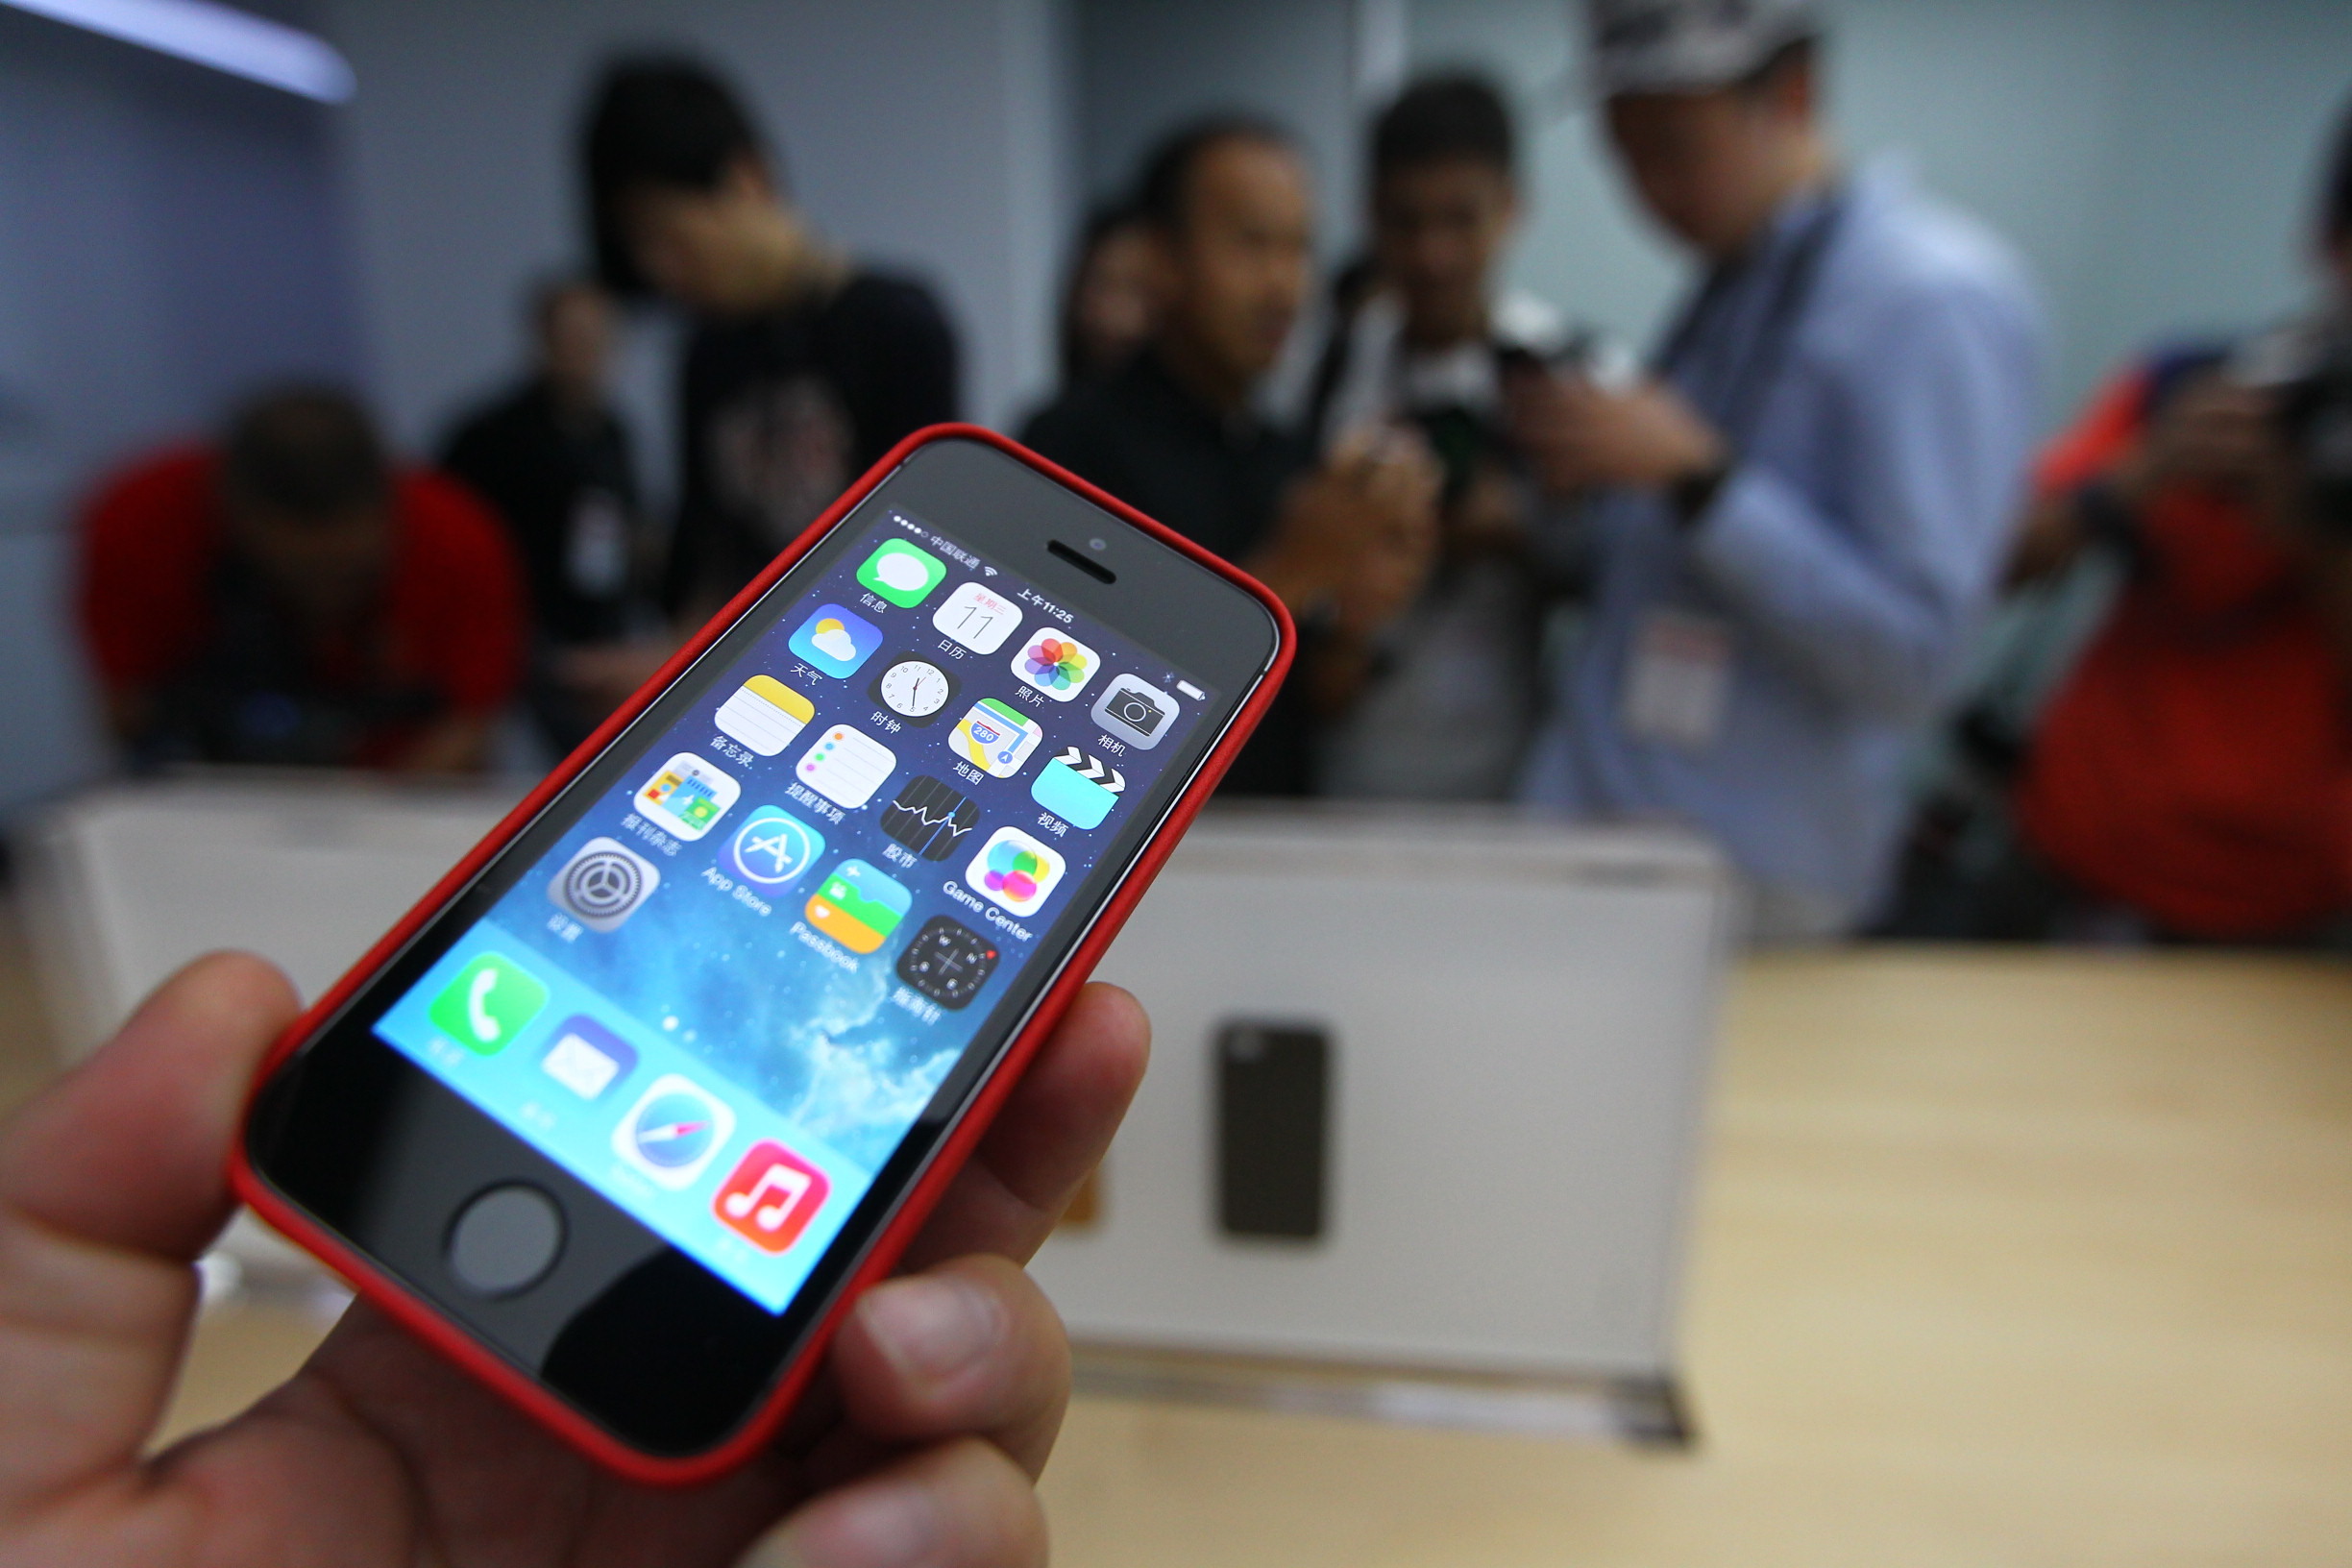 2014年8月26日 北京 苹果手机丢失一个月后,黄女士突然收到"苹果公司"